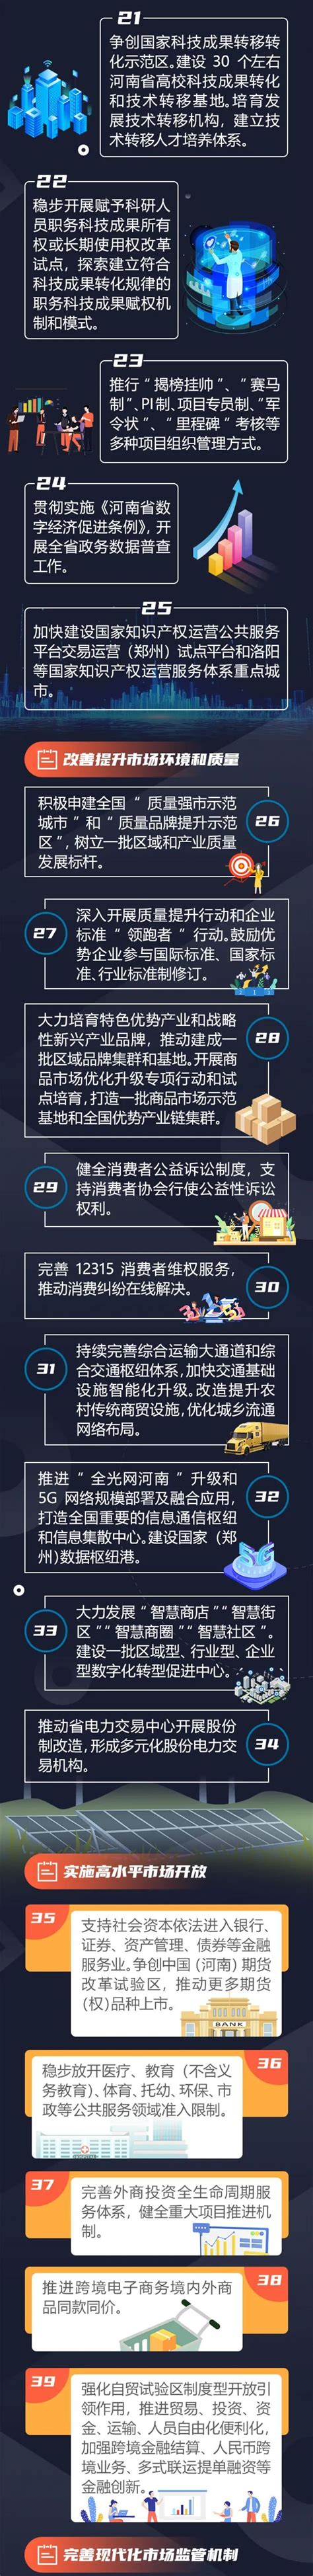 河南出台50条举措，推动建设高标准市场体系_部门_河南省人民政府门户网站